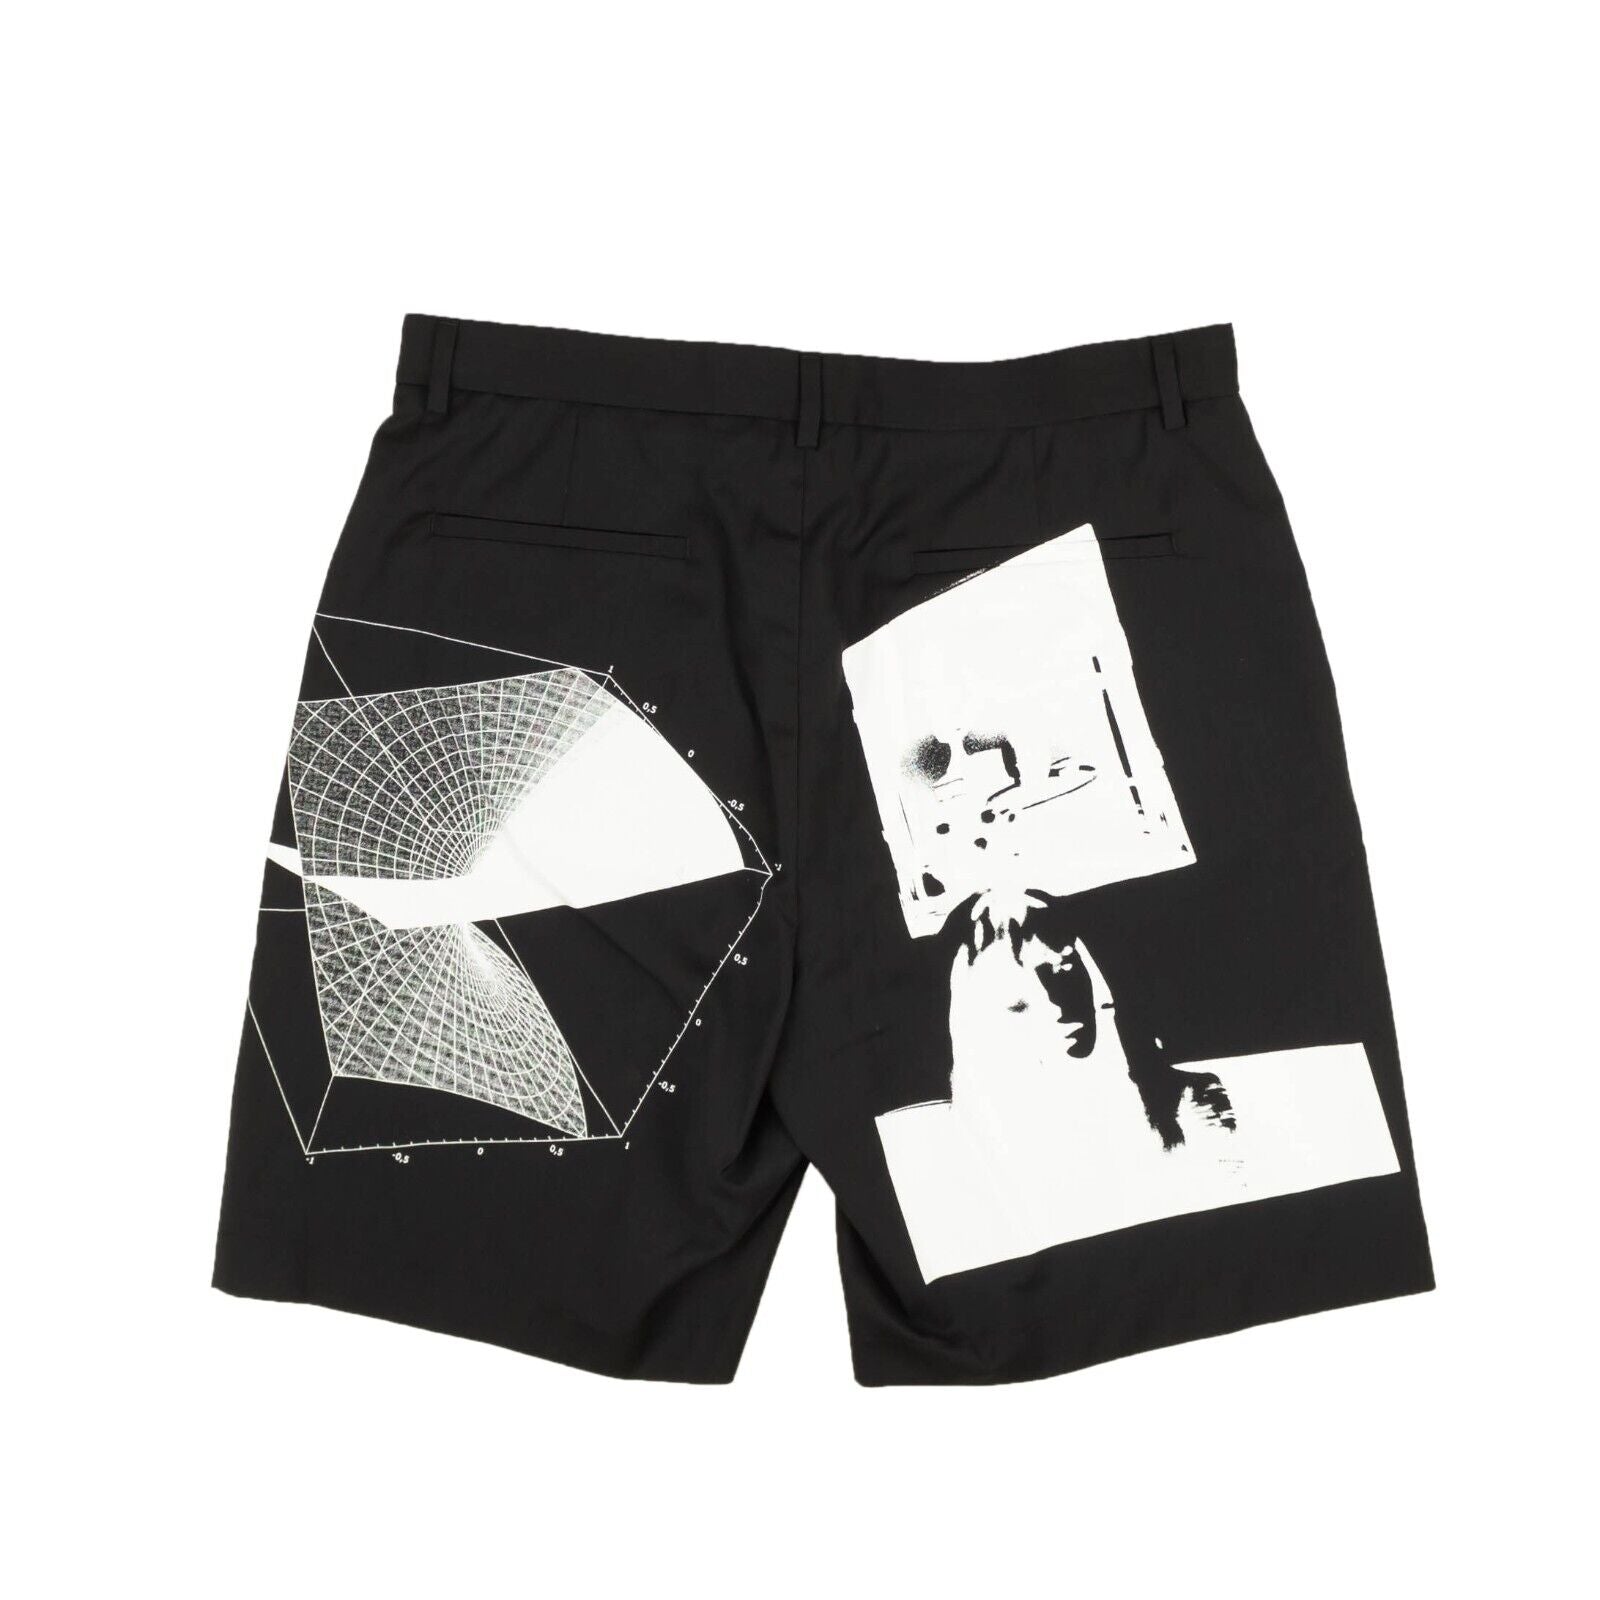 Msfts Rep Suit Short Swonprint - Black/White